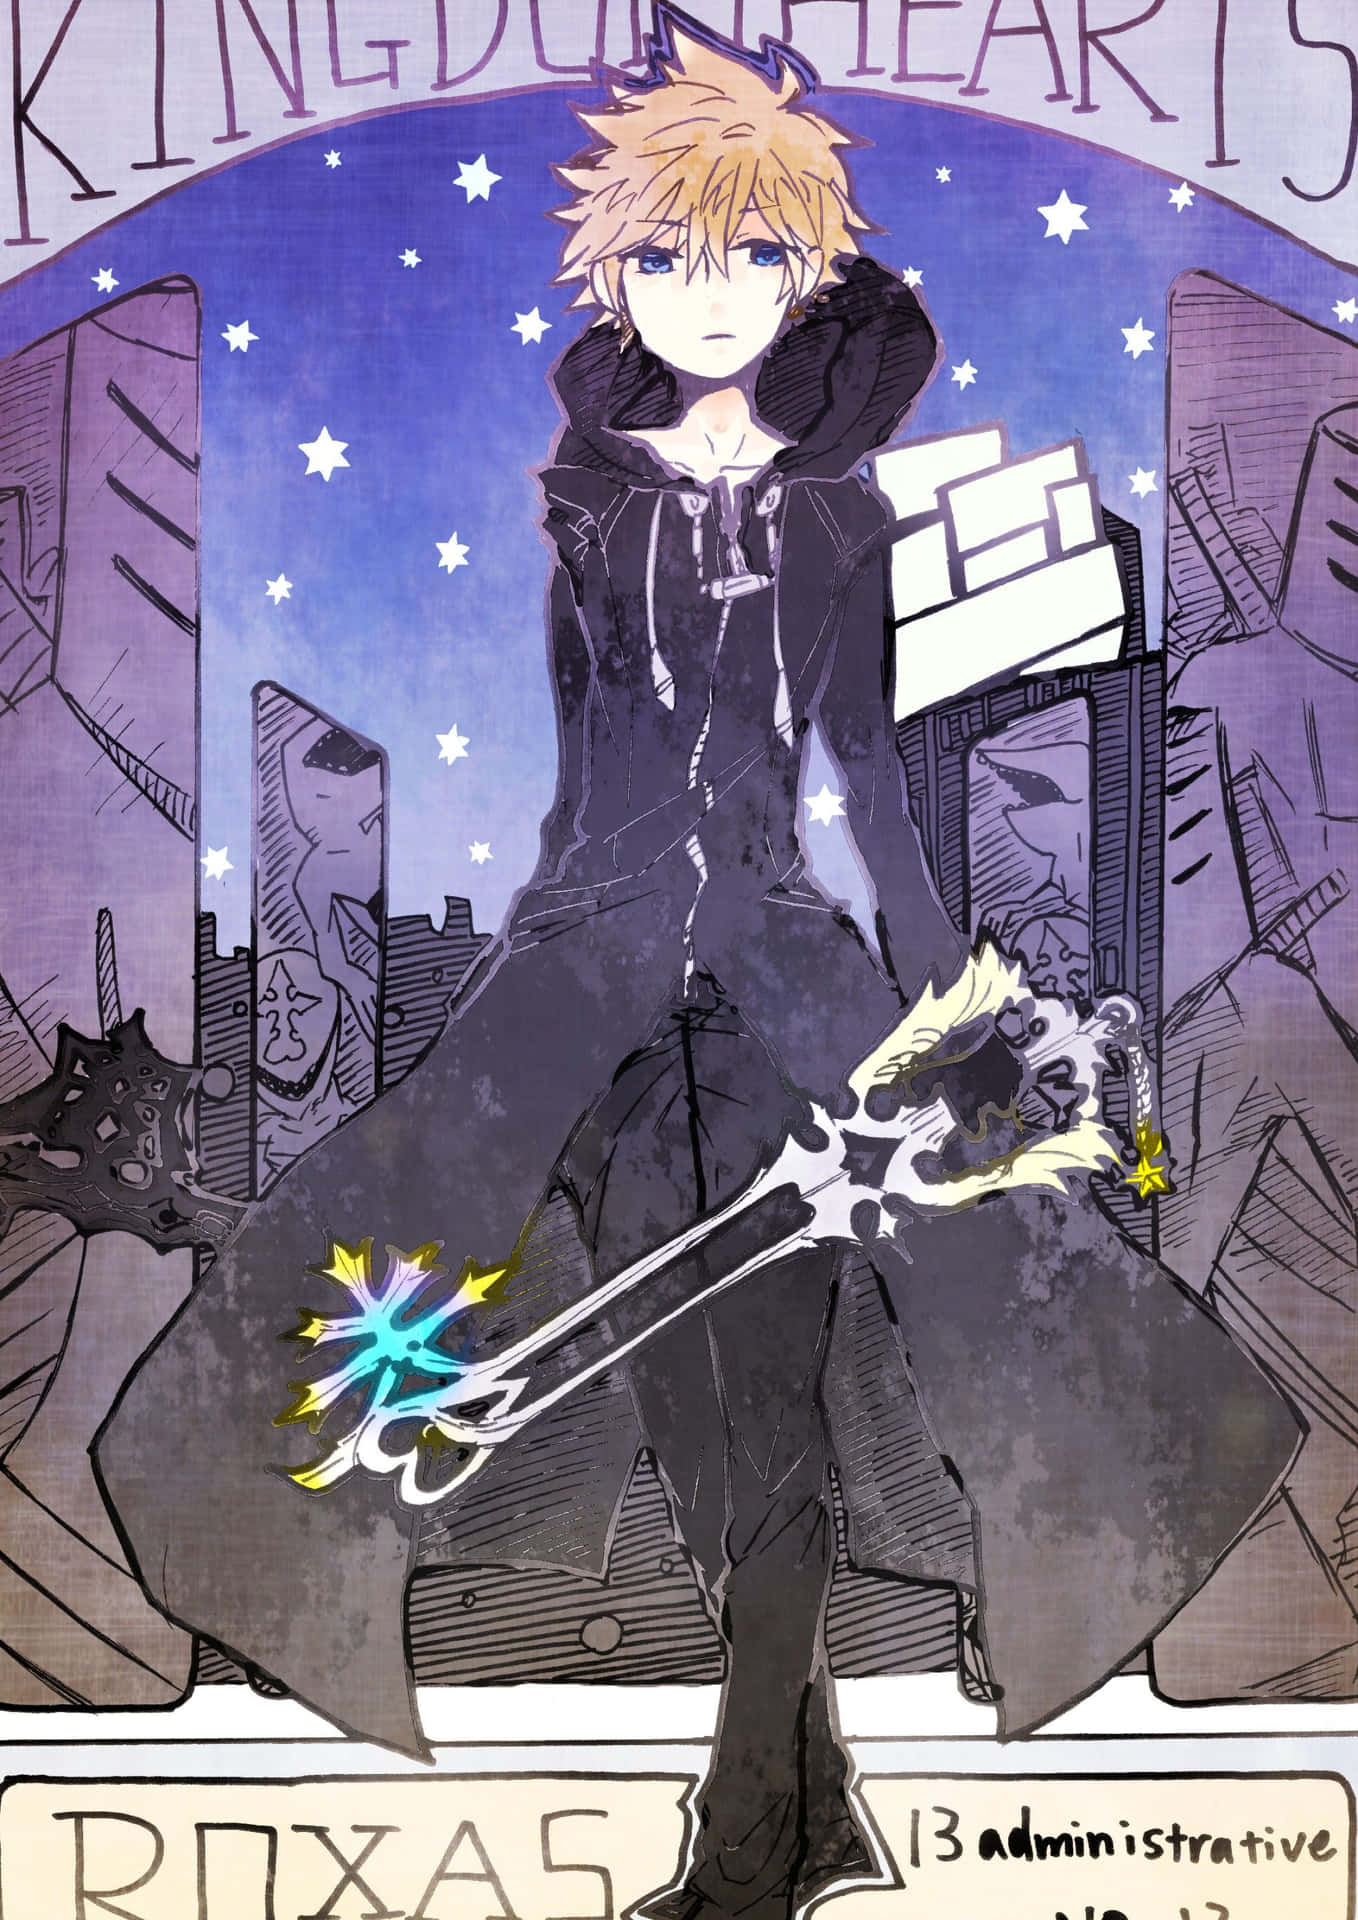 Et ikonisk udseende af Roxas fra Kingdom Hearts-serien Wallpaper